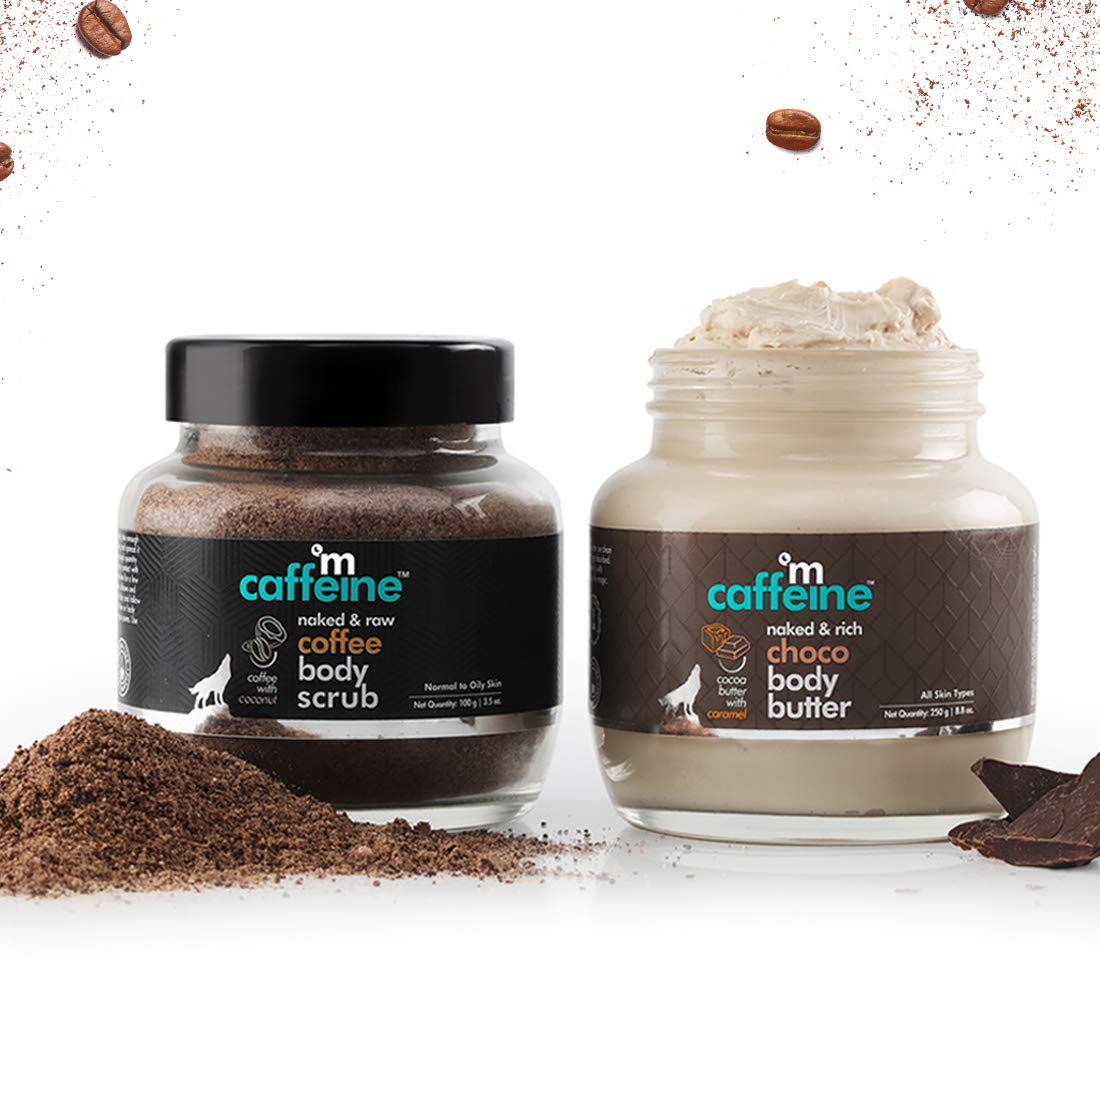 MCaffeine Body Polishing Kit - Exfoliation, Tan Removal & Moisturization - Coffee Body Scrub & Choco Body Butter - 350gm